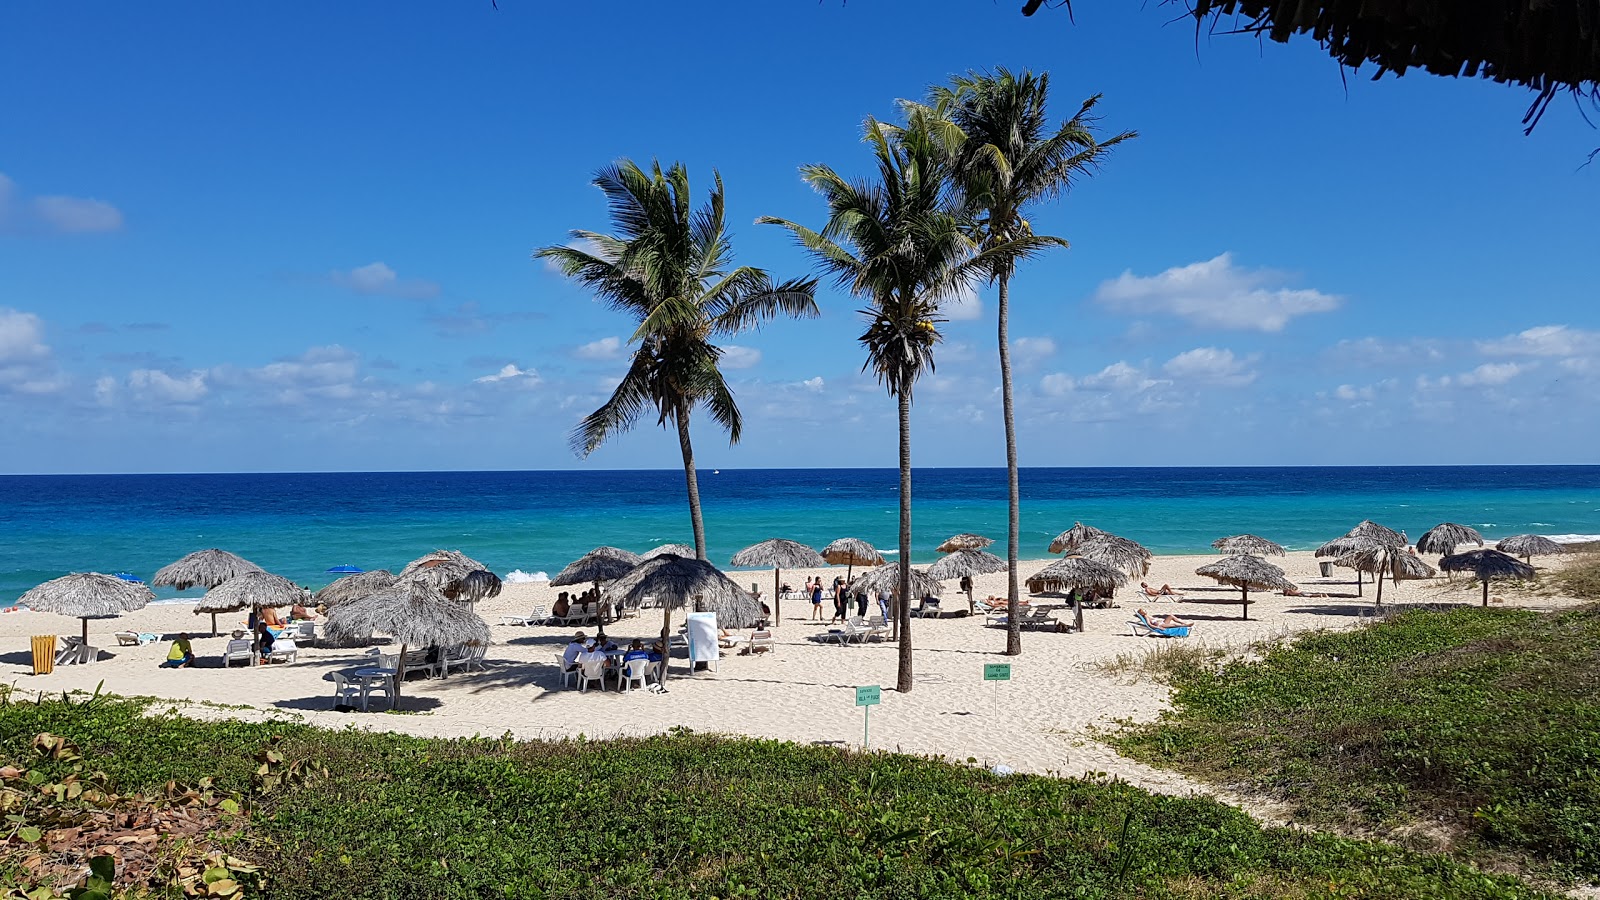 Playa Megano'in fotoğrafı geniş plaj ile birlikte